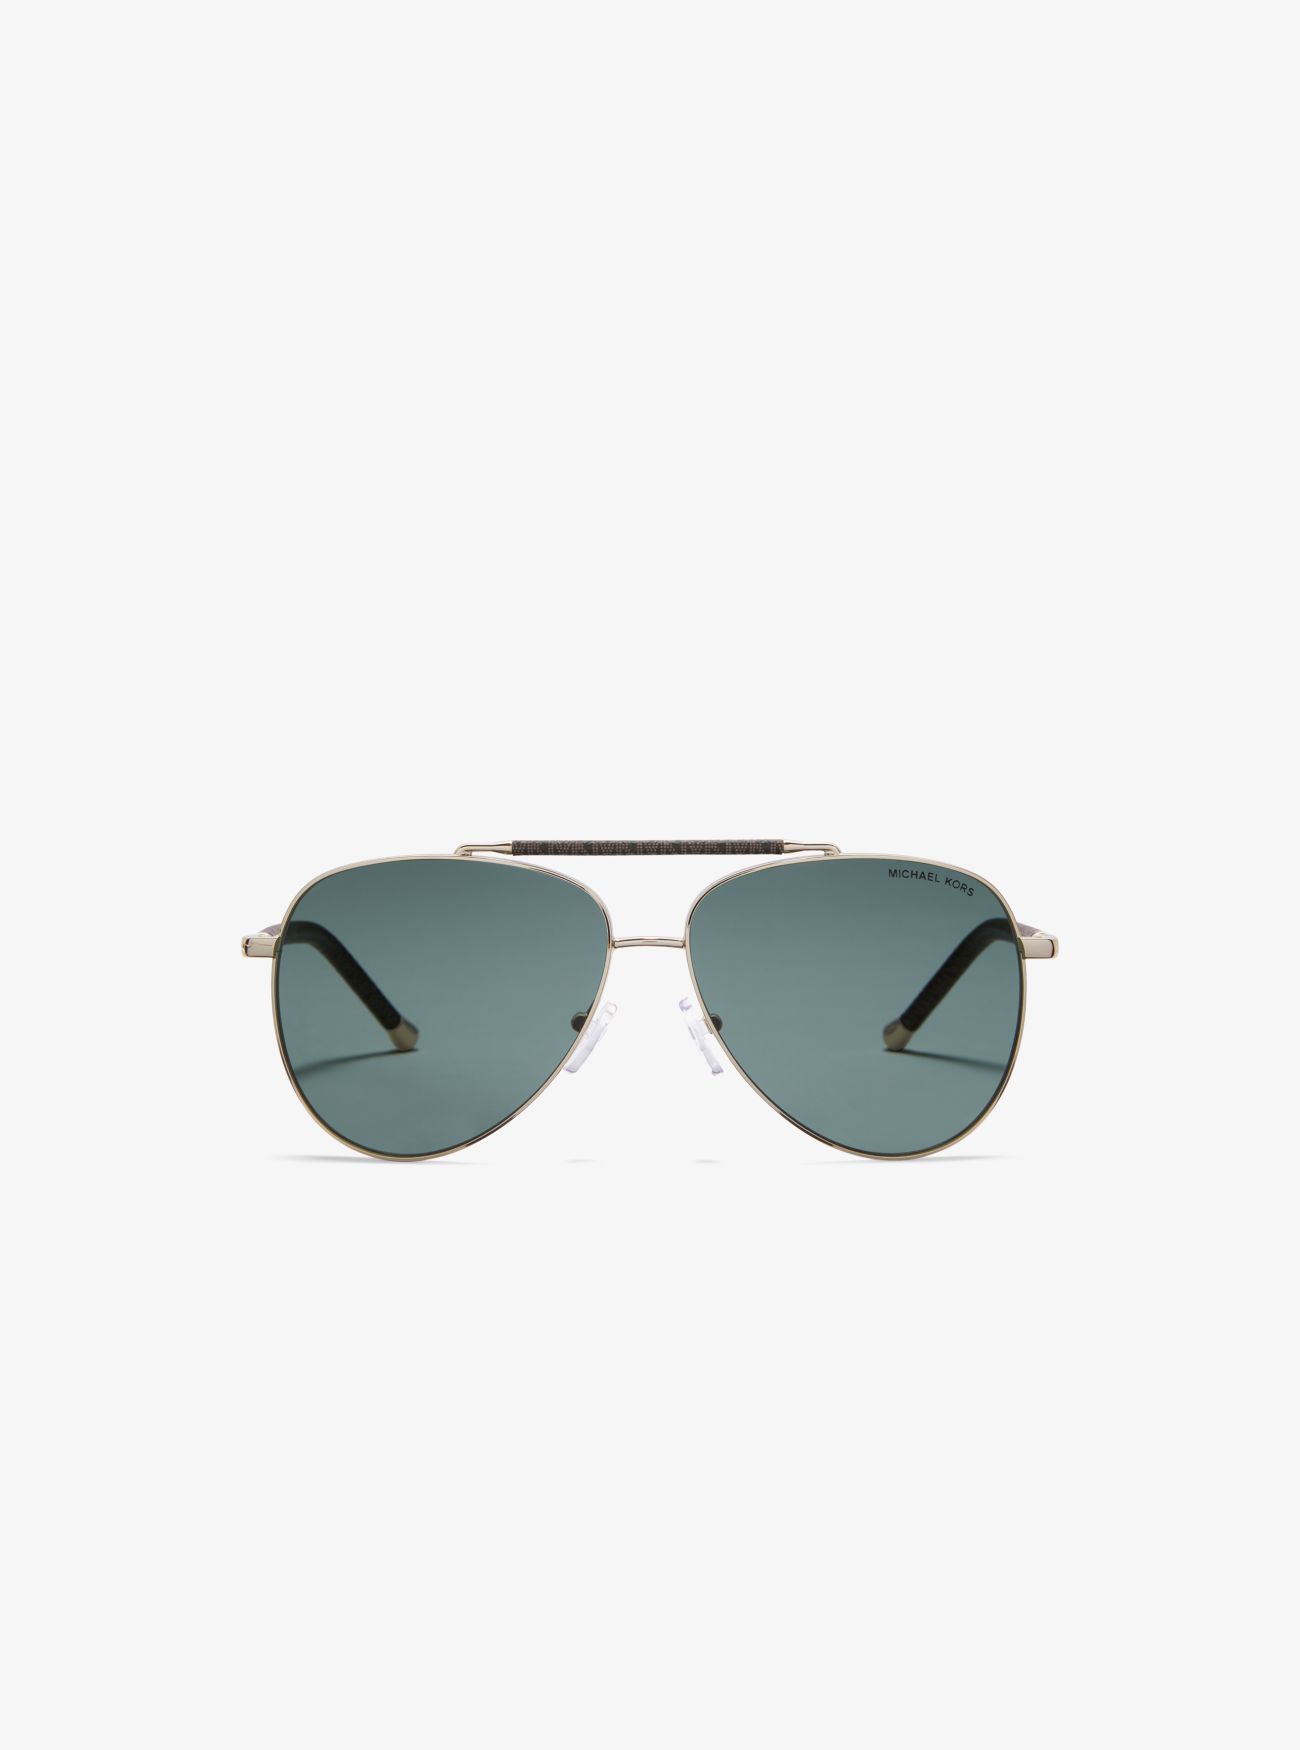 MK Portugal Sunglasses - Brown - Michael Kors